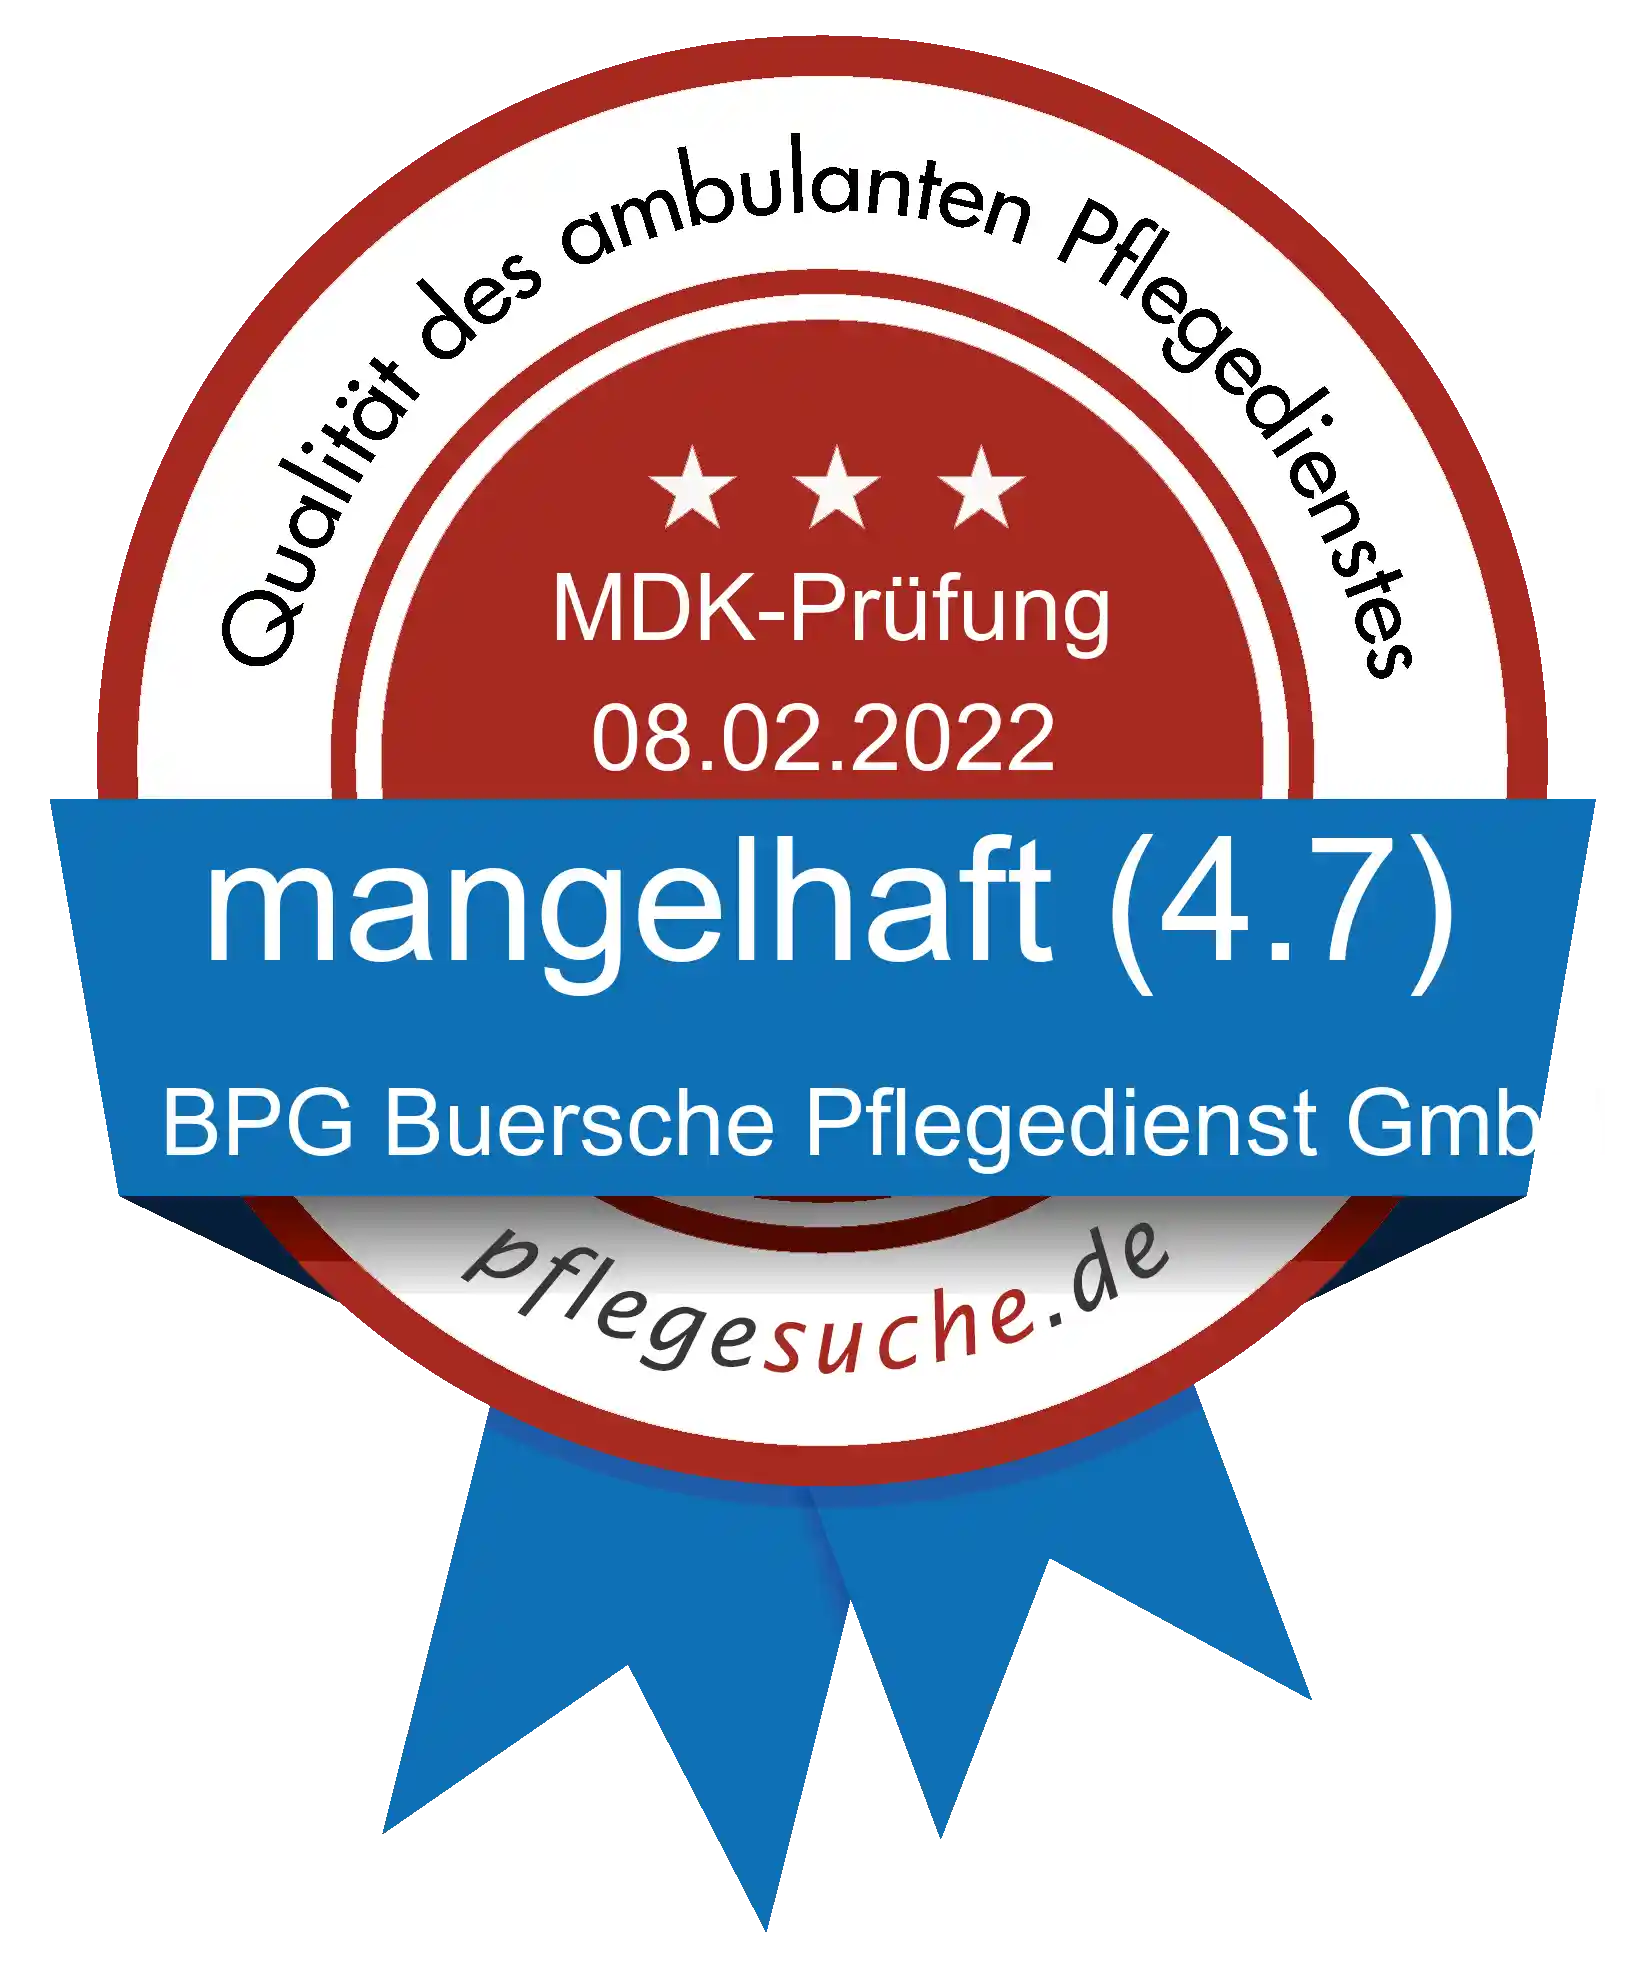 Siegel Benotung: BPG Buersche Pflegedienst GmbH